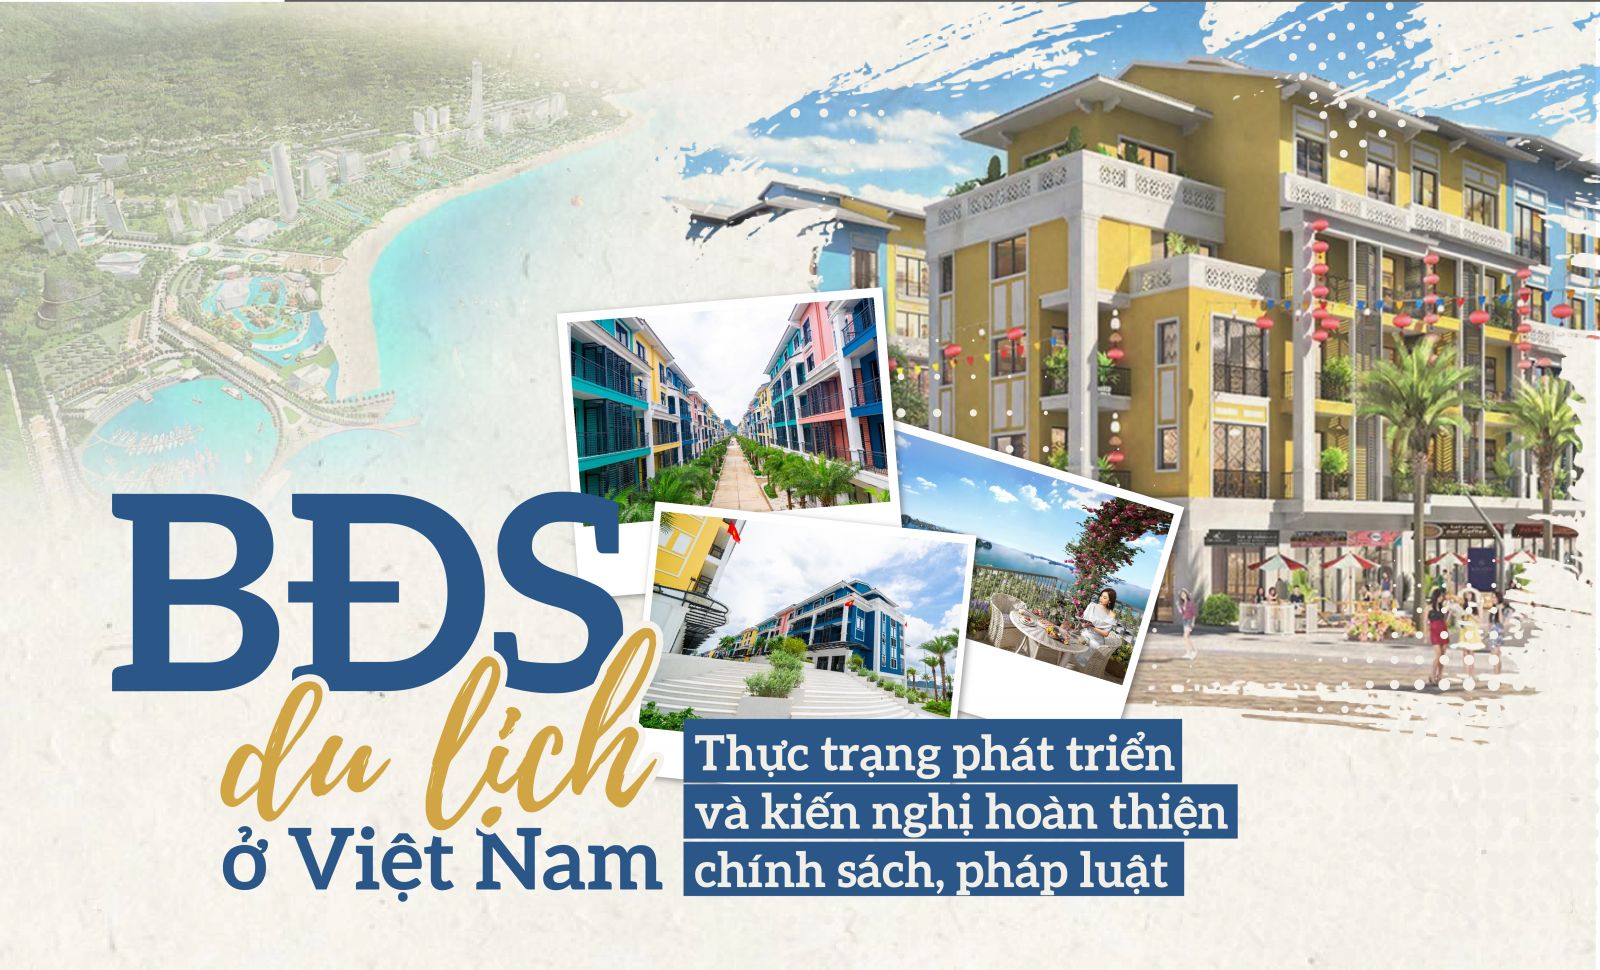 BĐS du lịch ở Việt Nam: Thực trạng phát triển và kiến nghị hoàn thiện chính sách pháp luật